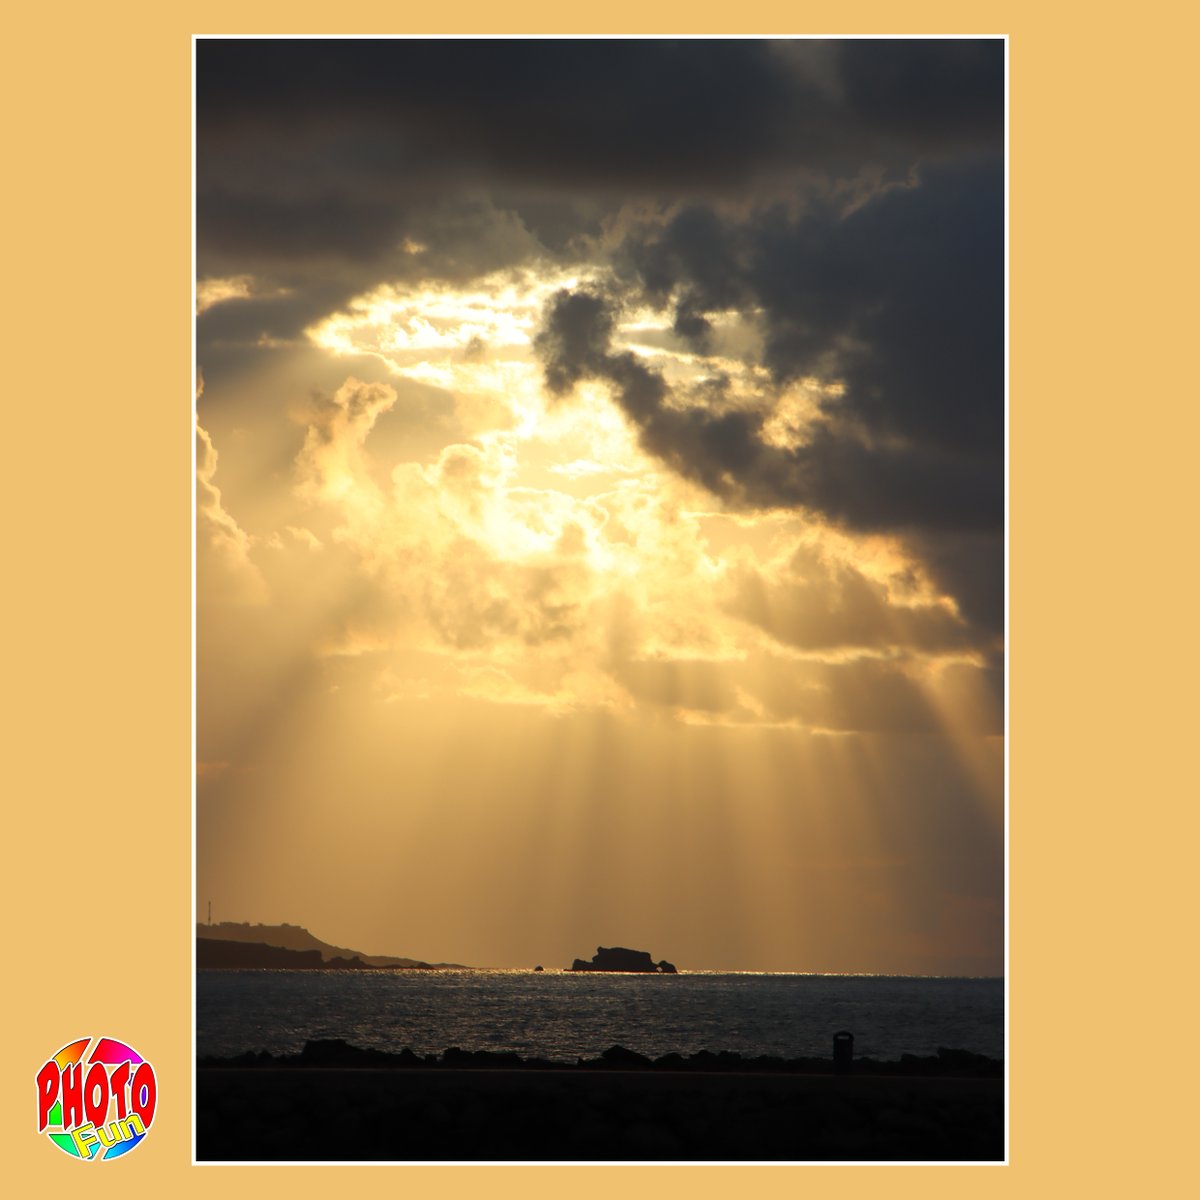 Canon EOS 90D Sunset in Las Palmas de Gran Canaria #canon #canondigital #eos90d #canoneos90d #digitalphotography #sunset #laspalmas #laspalmasdegrancanaria #grancanaria #playadelascanteras #photofun